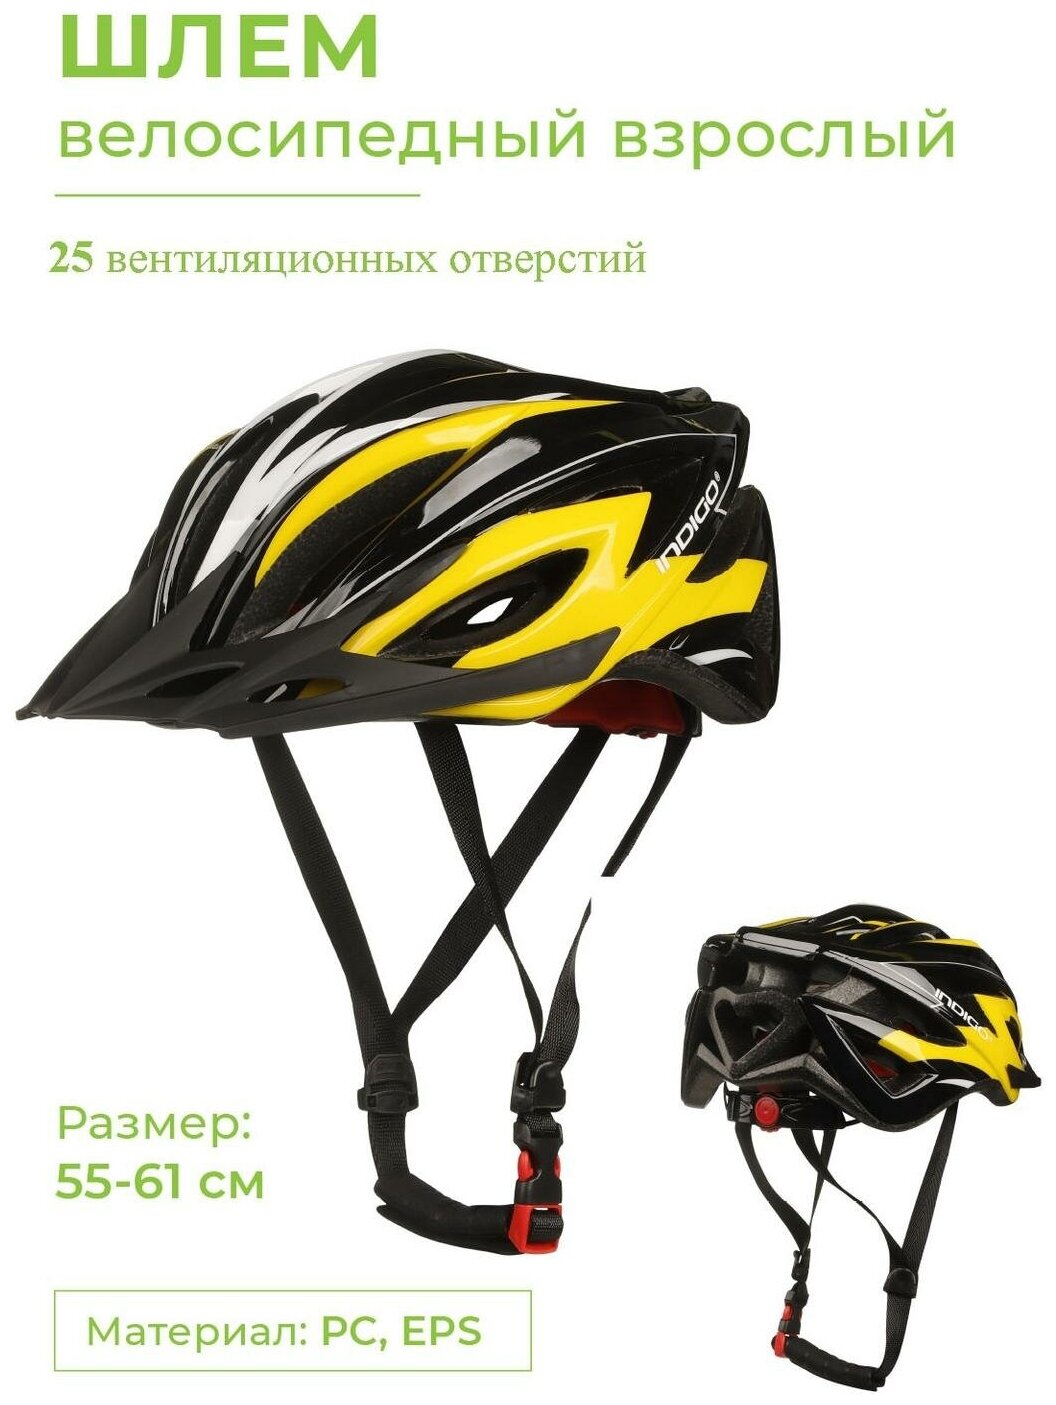 Шлем спортивный (защитный) велосипедный взрослый INDIGO 25 вентиляционных отверстий 55-61см